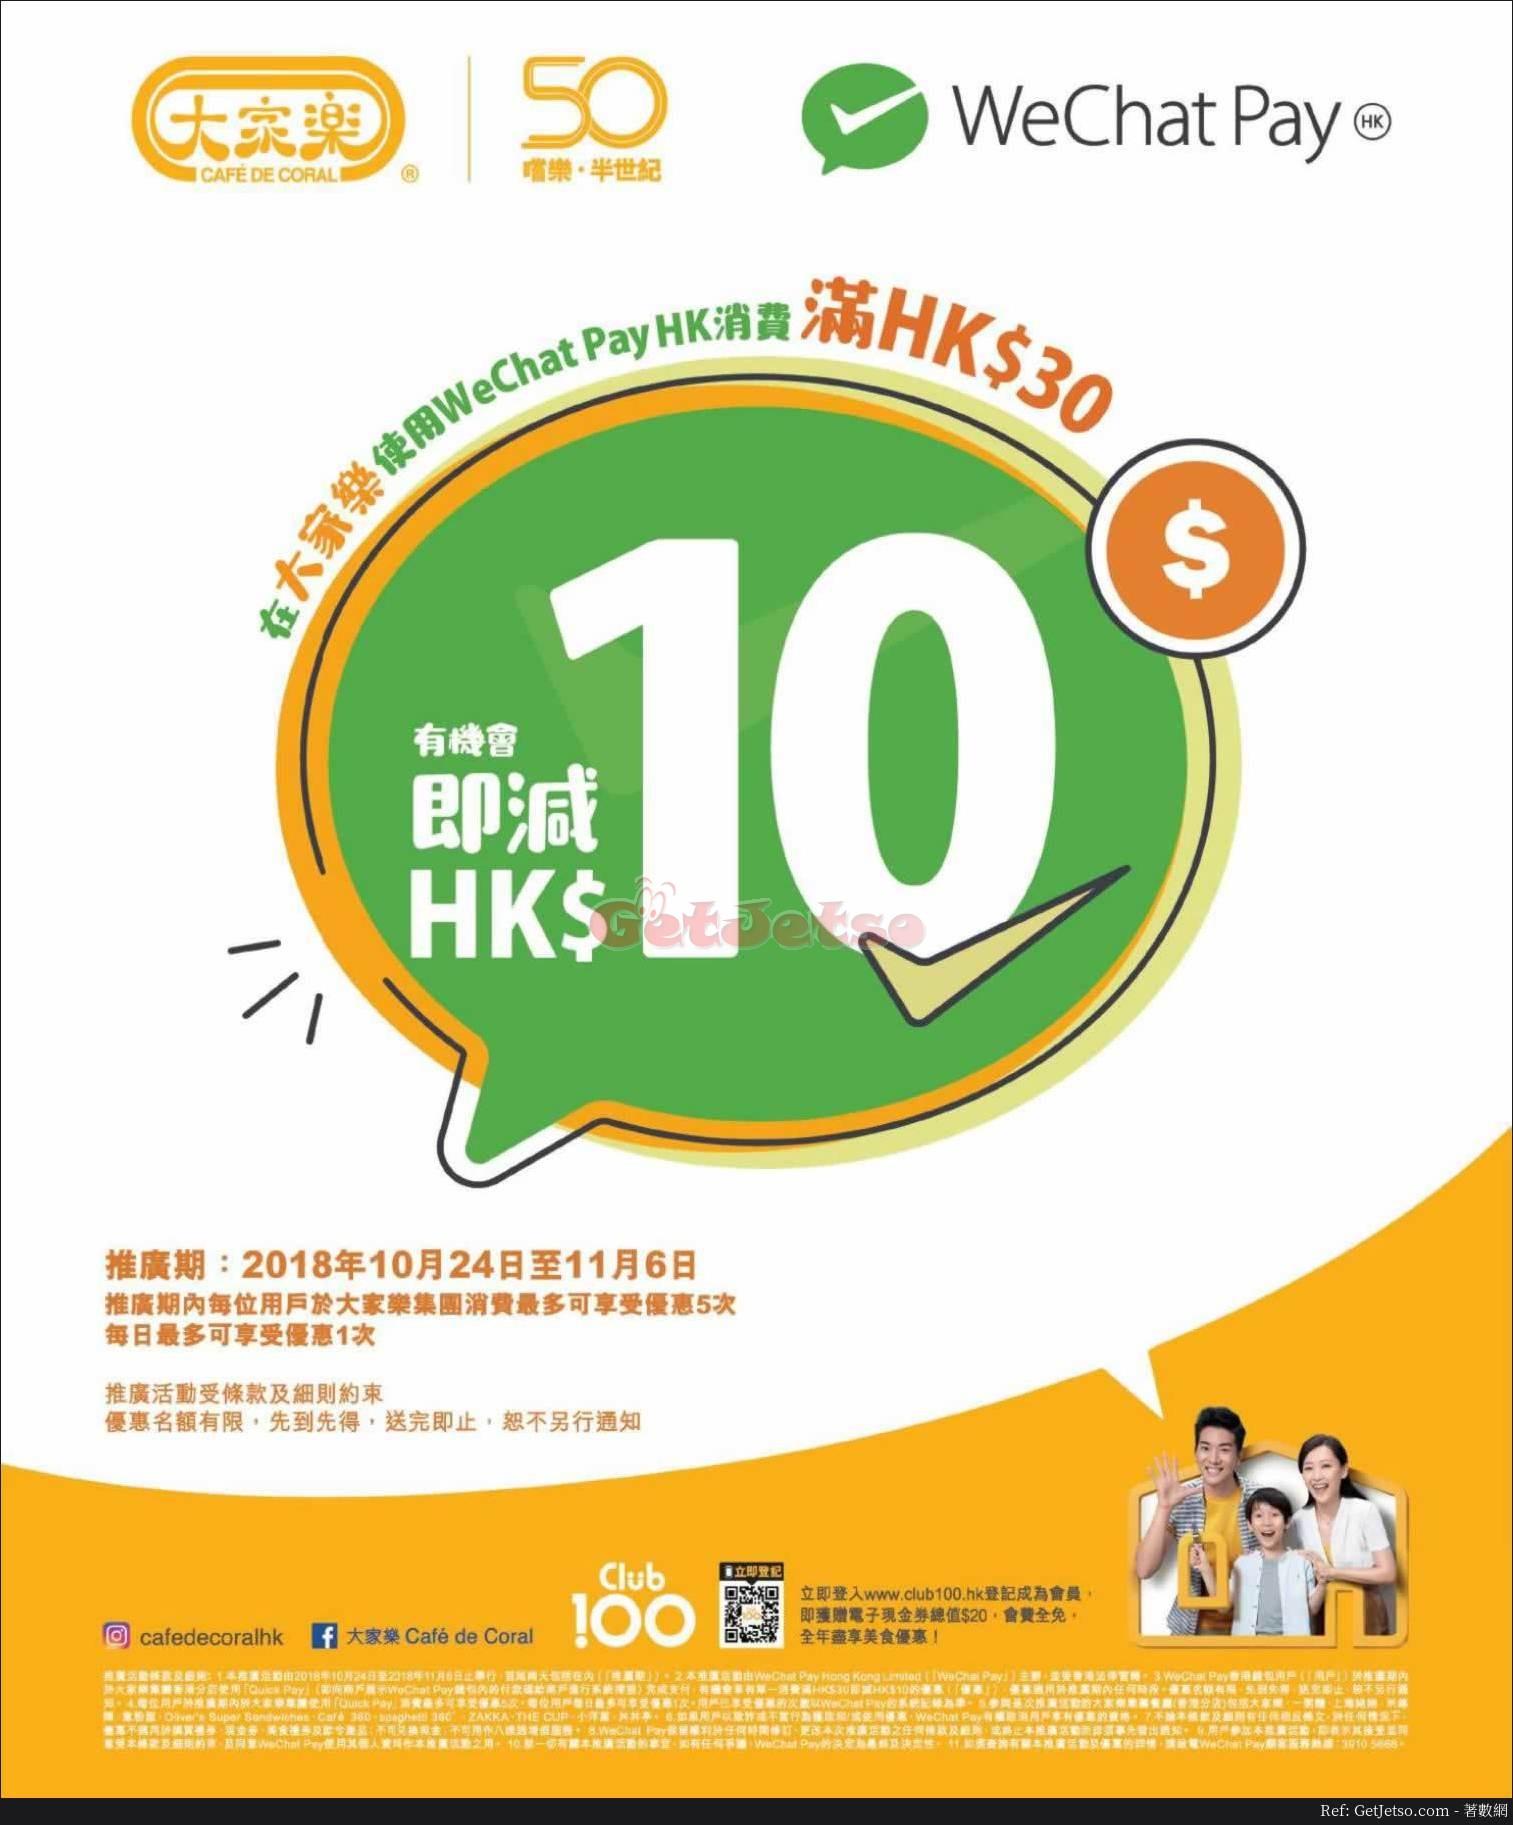 大家樂消費滿 即減優惠@WeChat Pay(至18年11月6日)圖片1